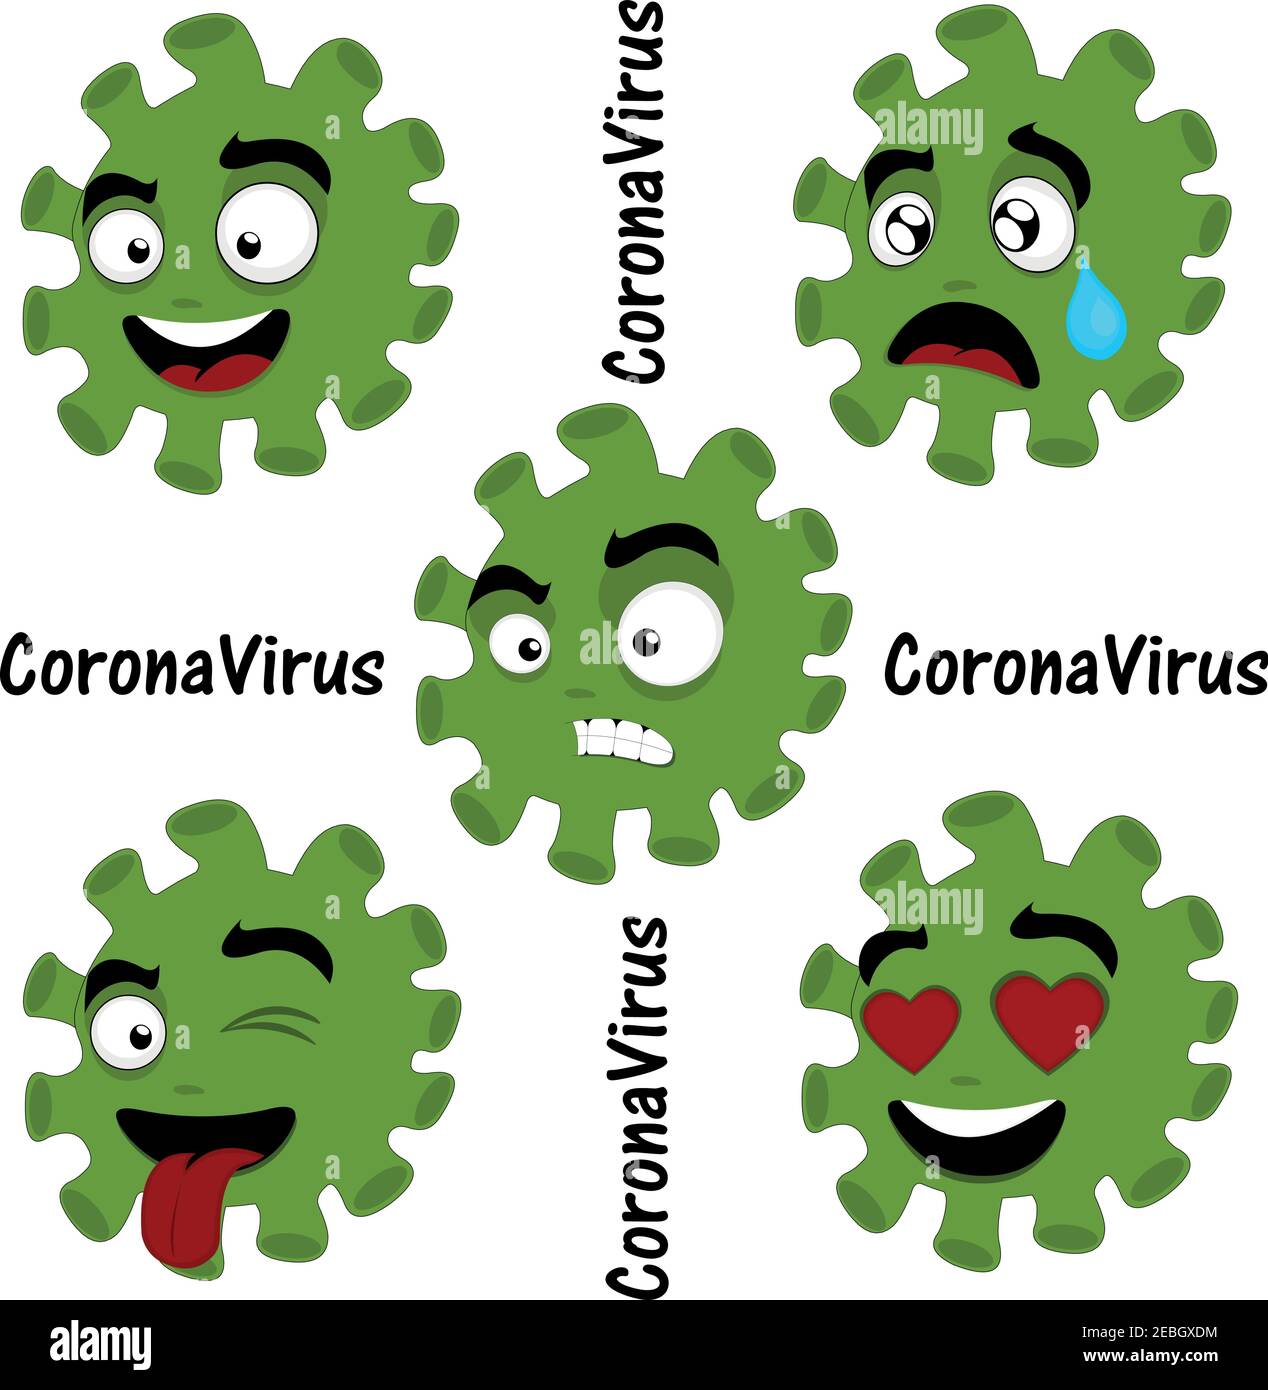 Illustrazione vettoriale di batteri cartoni animati, virus o emoticon microbi, con espressioni di tristezza, rabbia, amore, follia e gioia Illustrazione Vettoriale